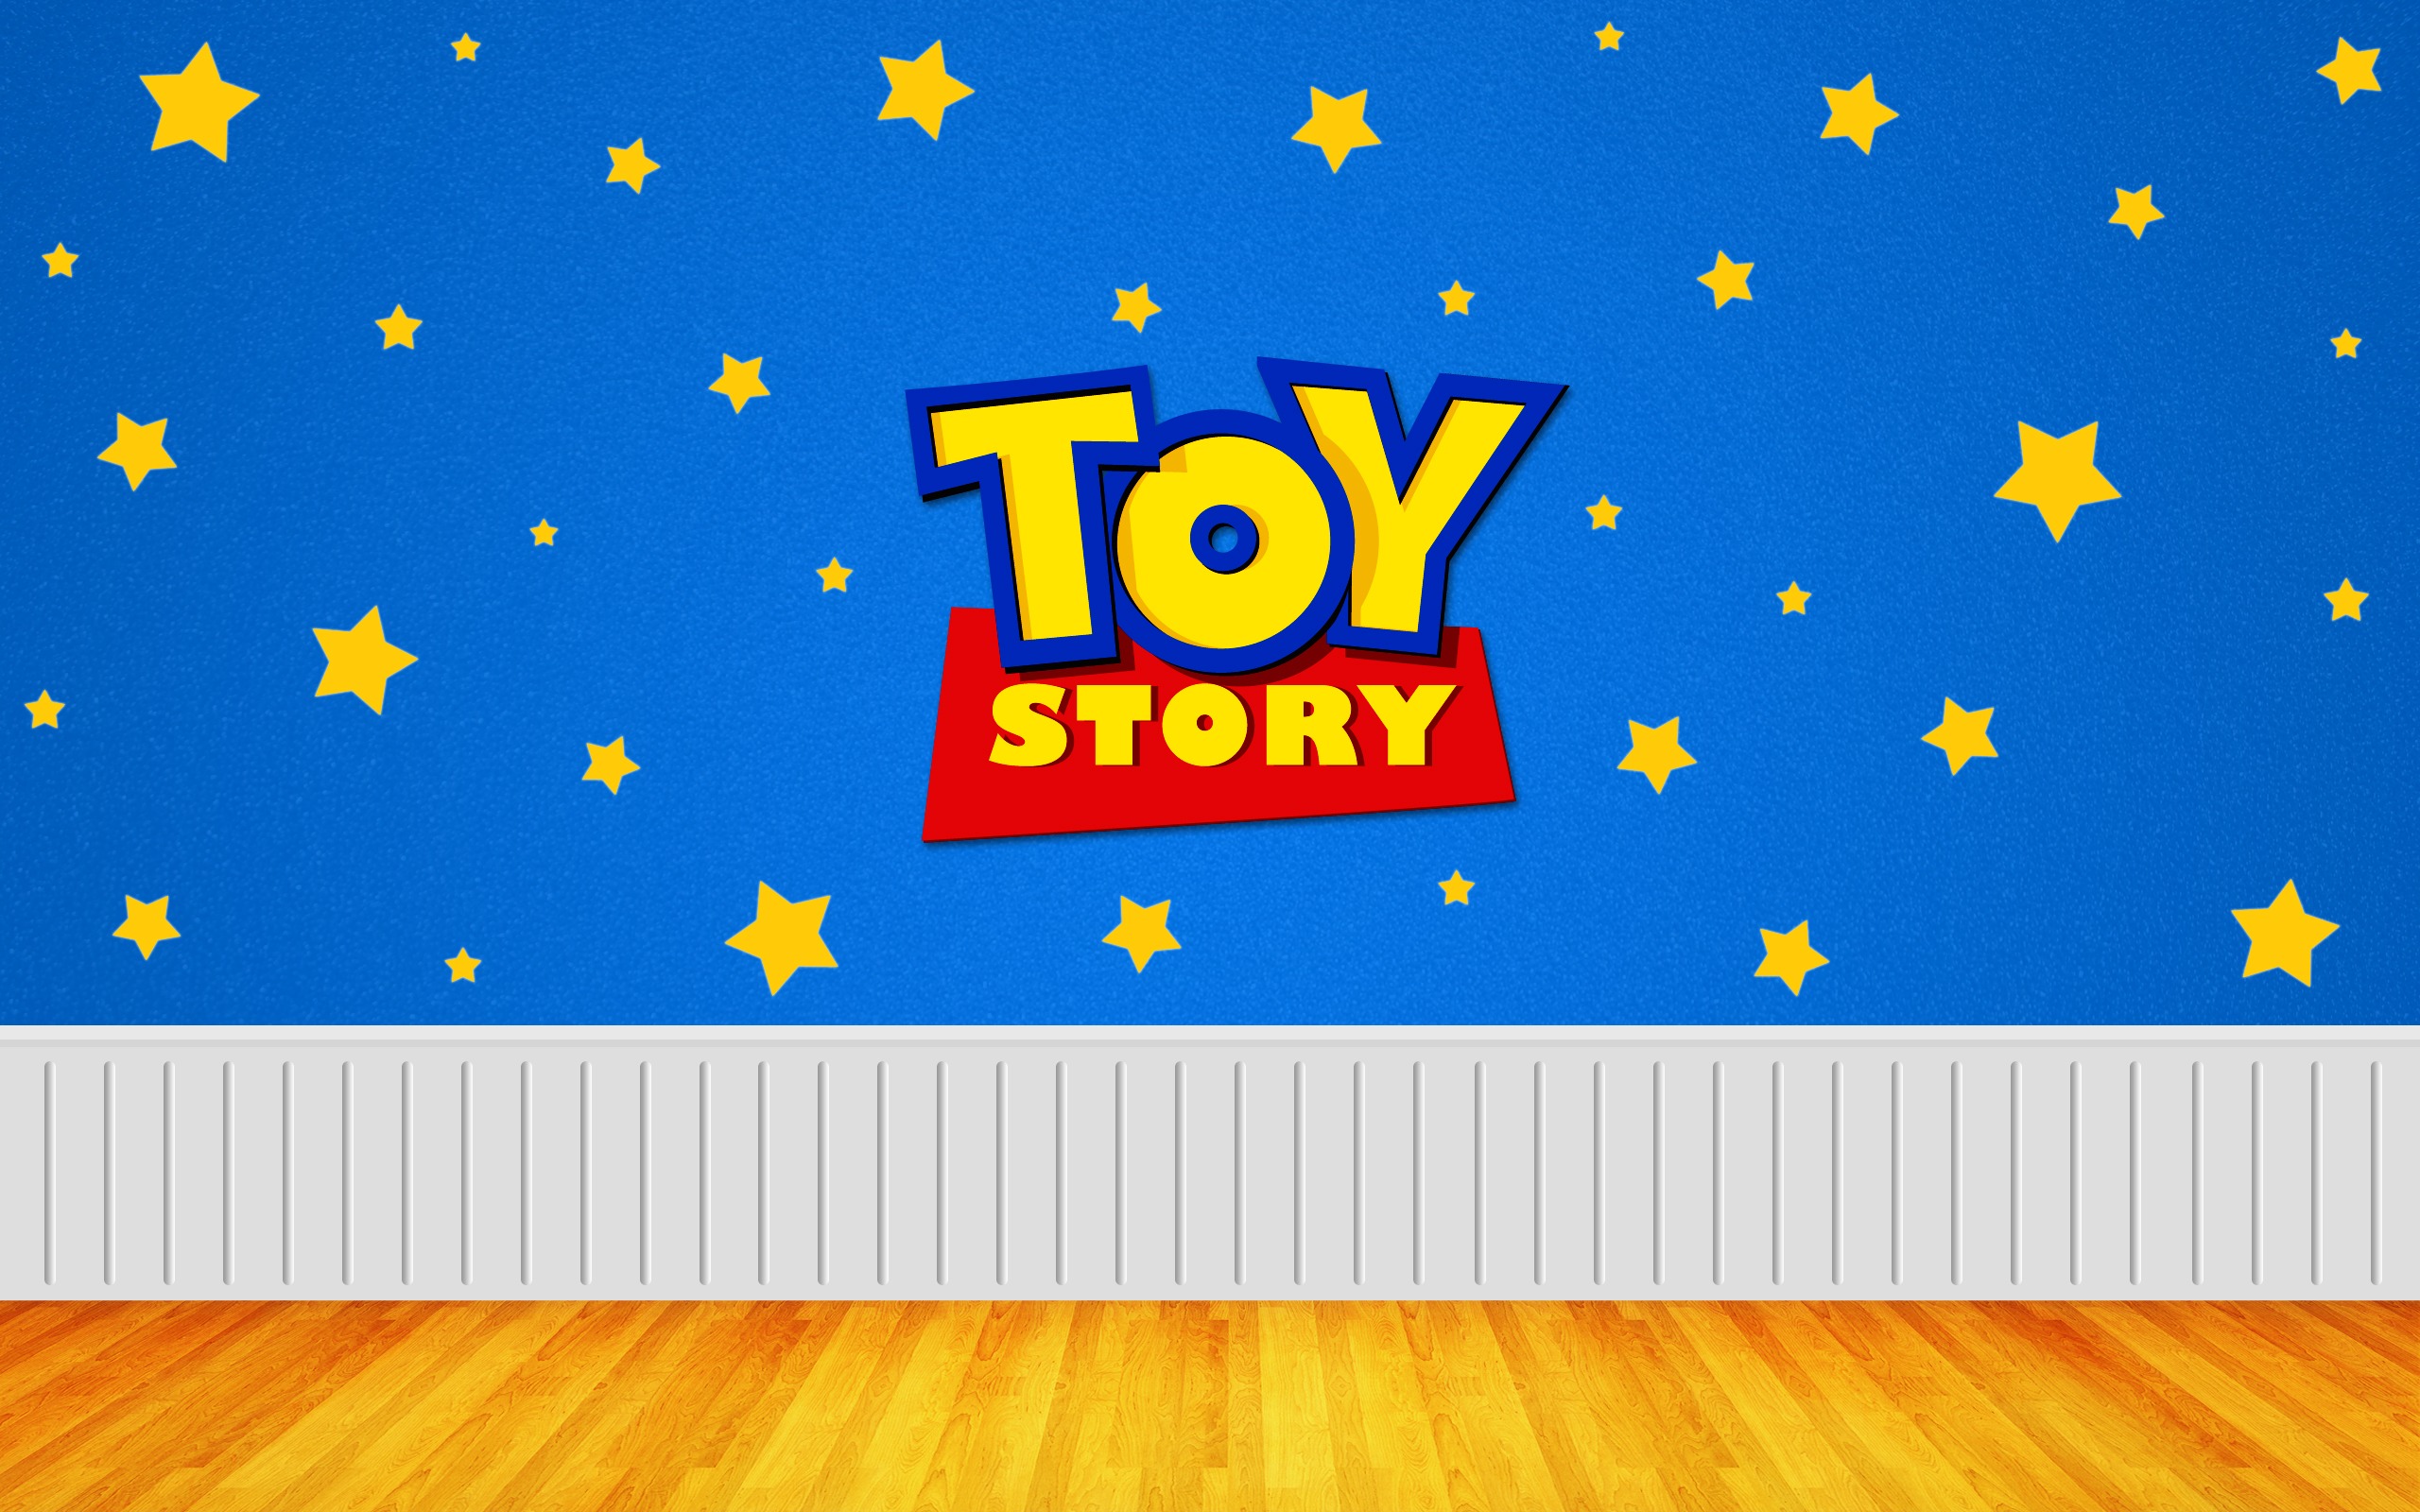 vejam a seguir uma sequncia de wallpapers do toy story e escolham o